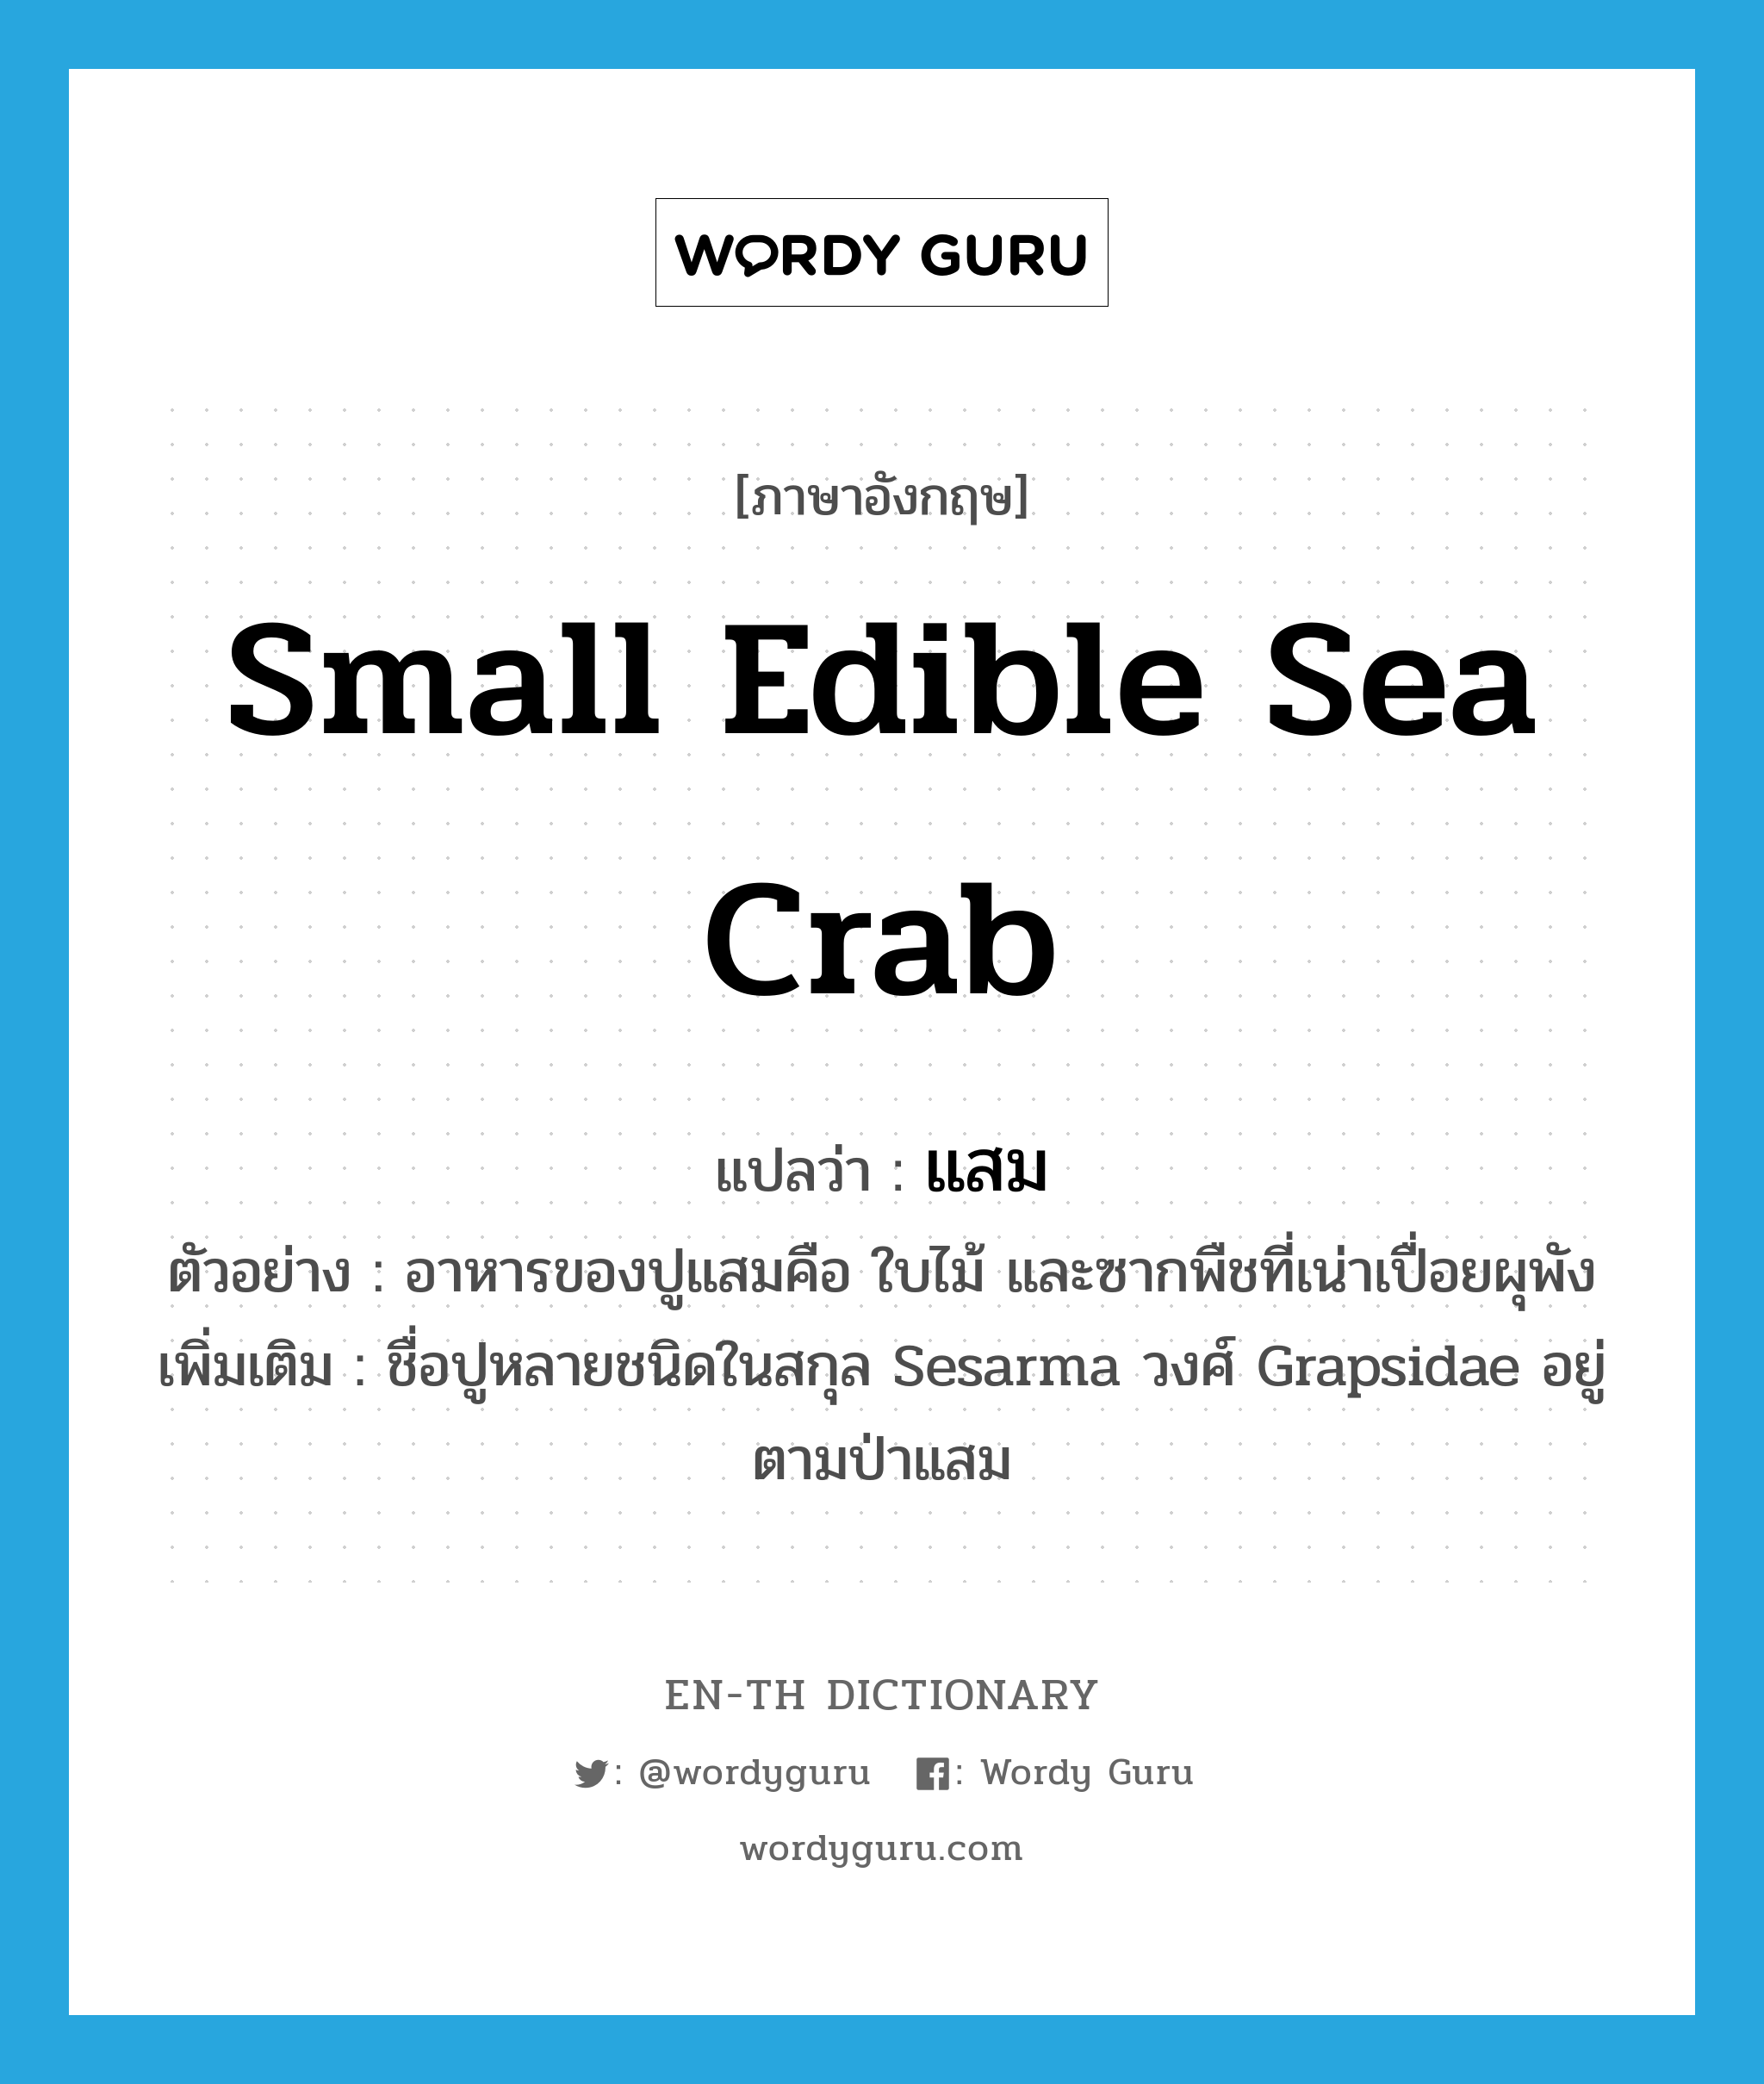 แสม ภาษาอังกฤษ?, คำศัพท์ภาษาอังกฤษ แสม แปลว่า small edible sea crab ประเภท N ตัวอย่าง อาหารของปูแสมคือ ใบไม้ และซากพืชที่เน่าเปื่อยผุพัง เพิ่มเติม ชื่อปูหลายชนิดในสกุล Sesarma วงศ์ Grapsidae อยู่ตามป่าแสม หมวด N